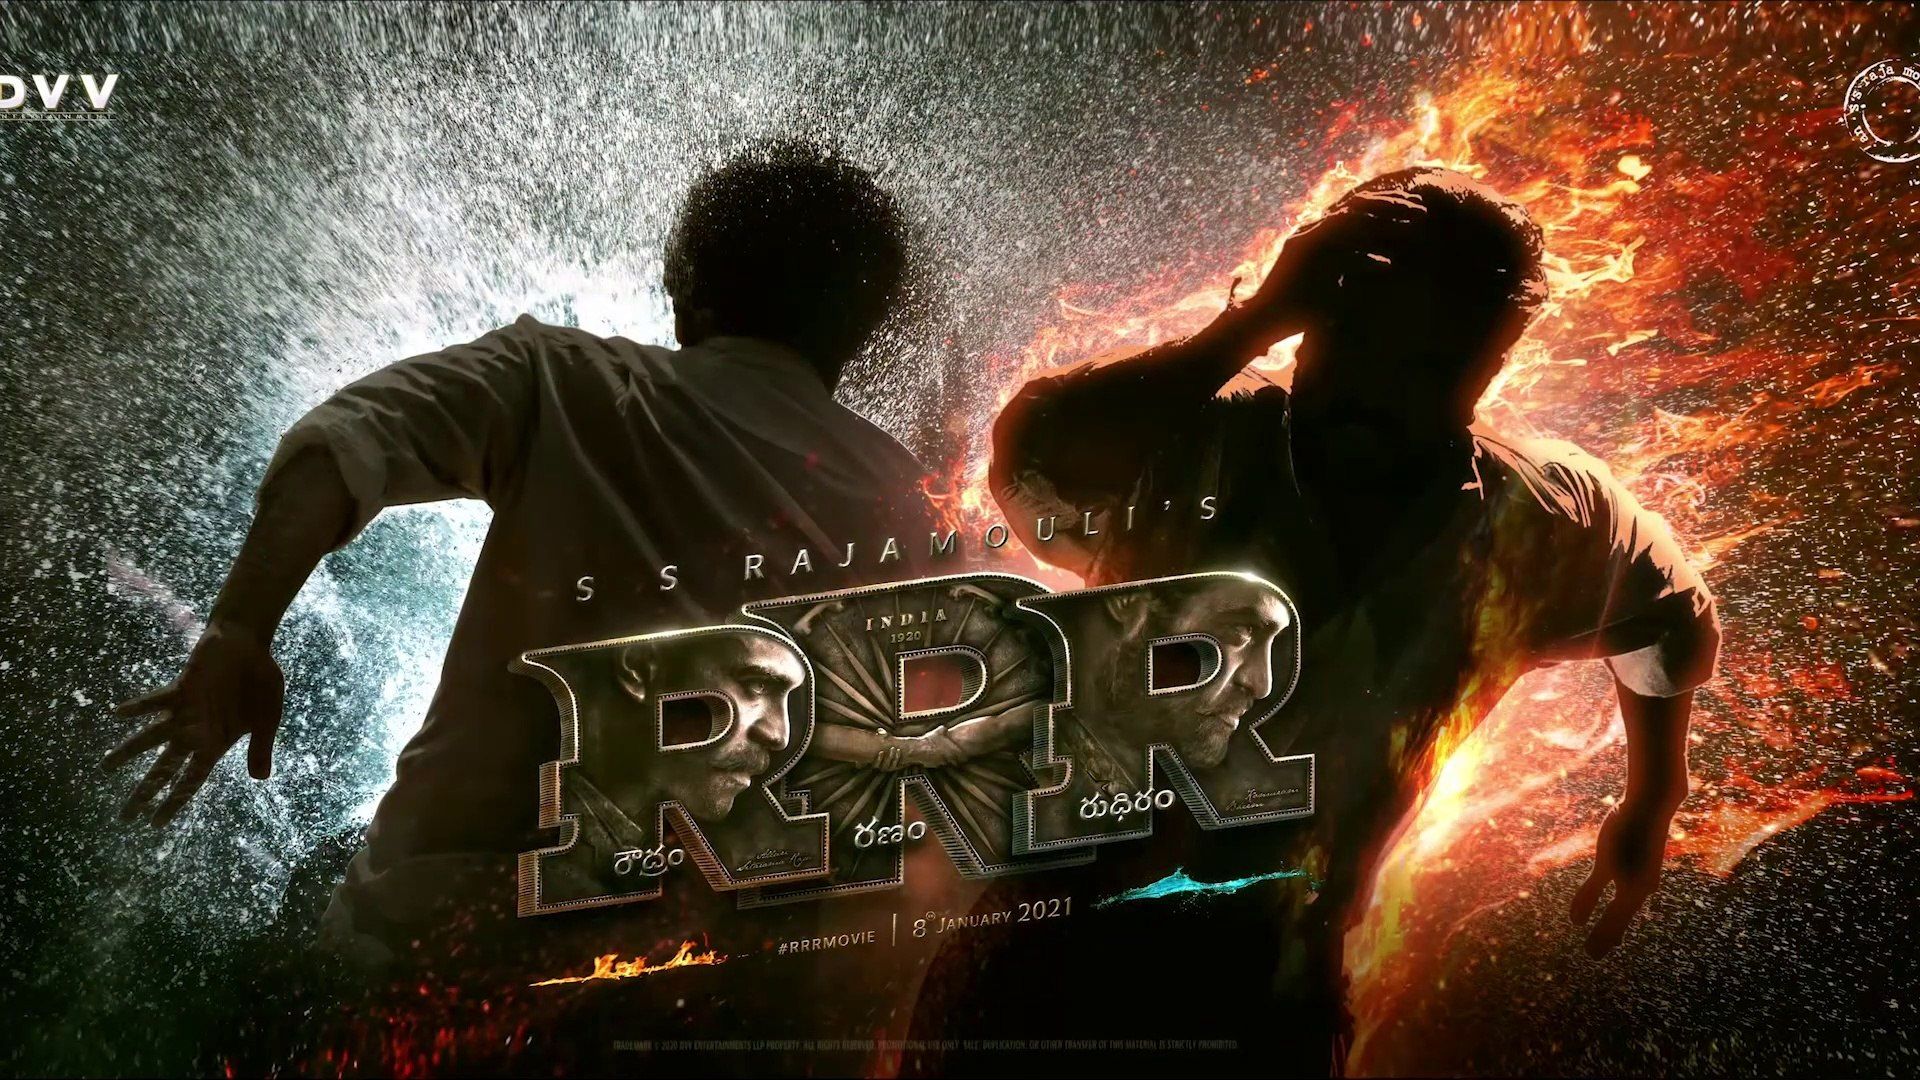 RRR Motion Poster 4k 60Fps. NTR, Ram Charan, Ajay Devgn